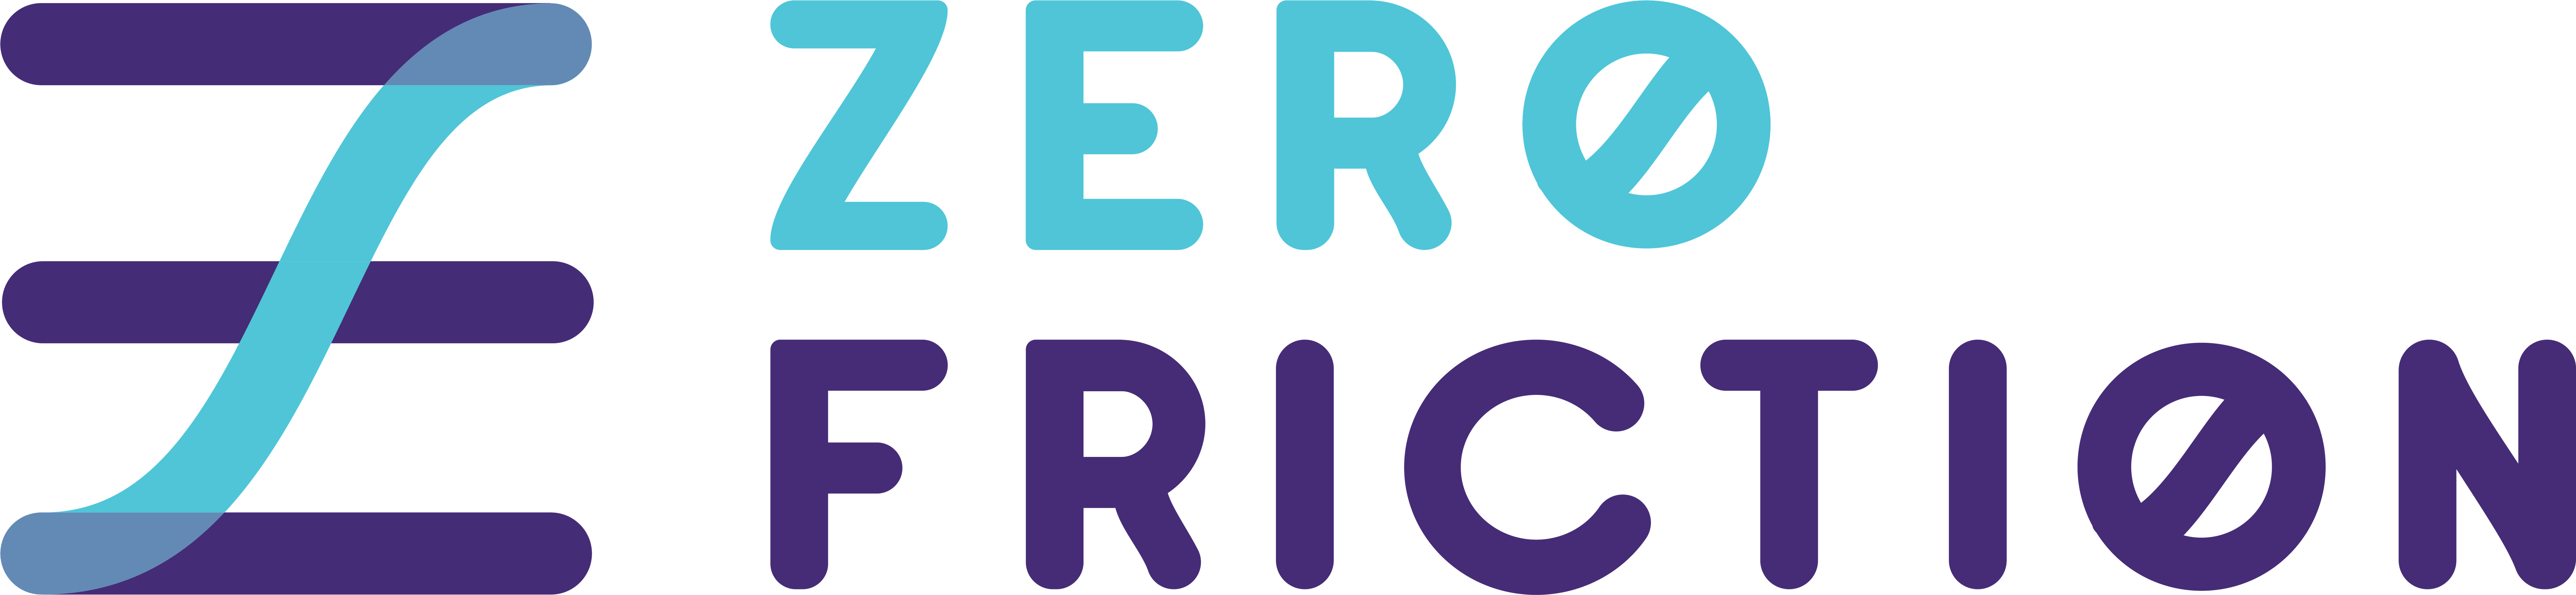 logo_zero-friction